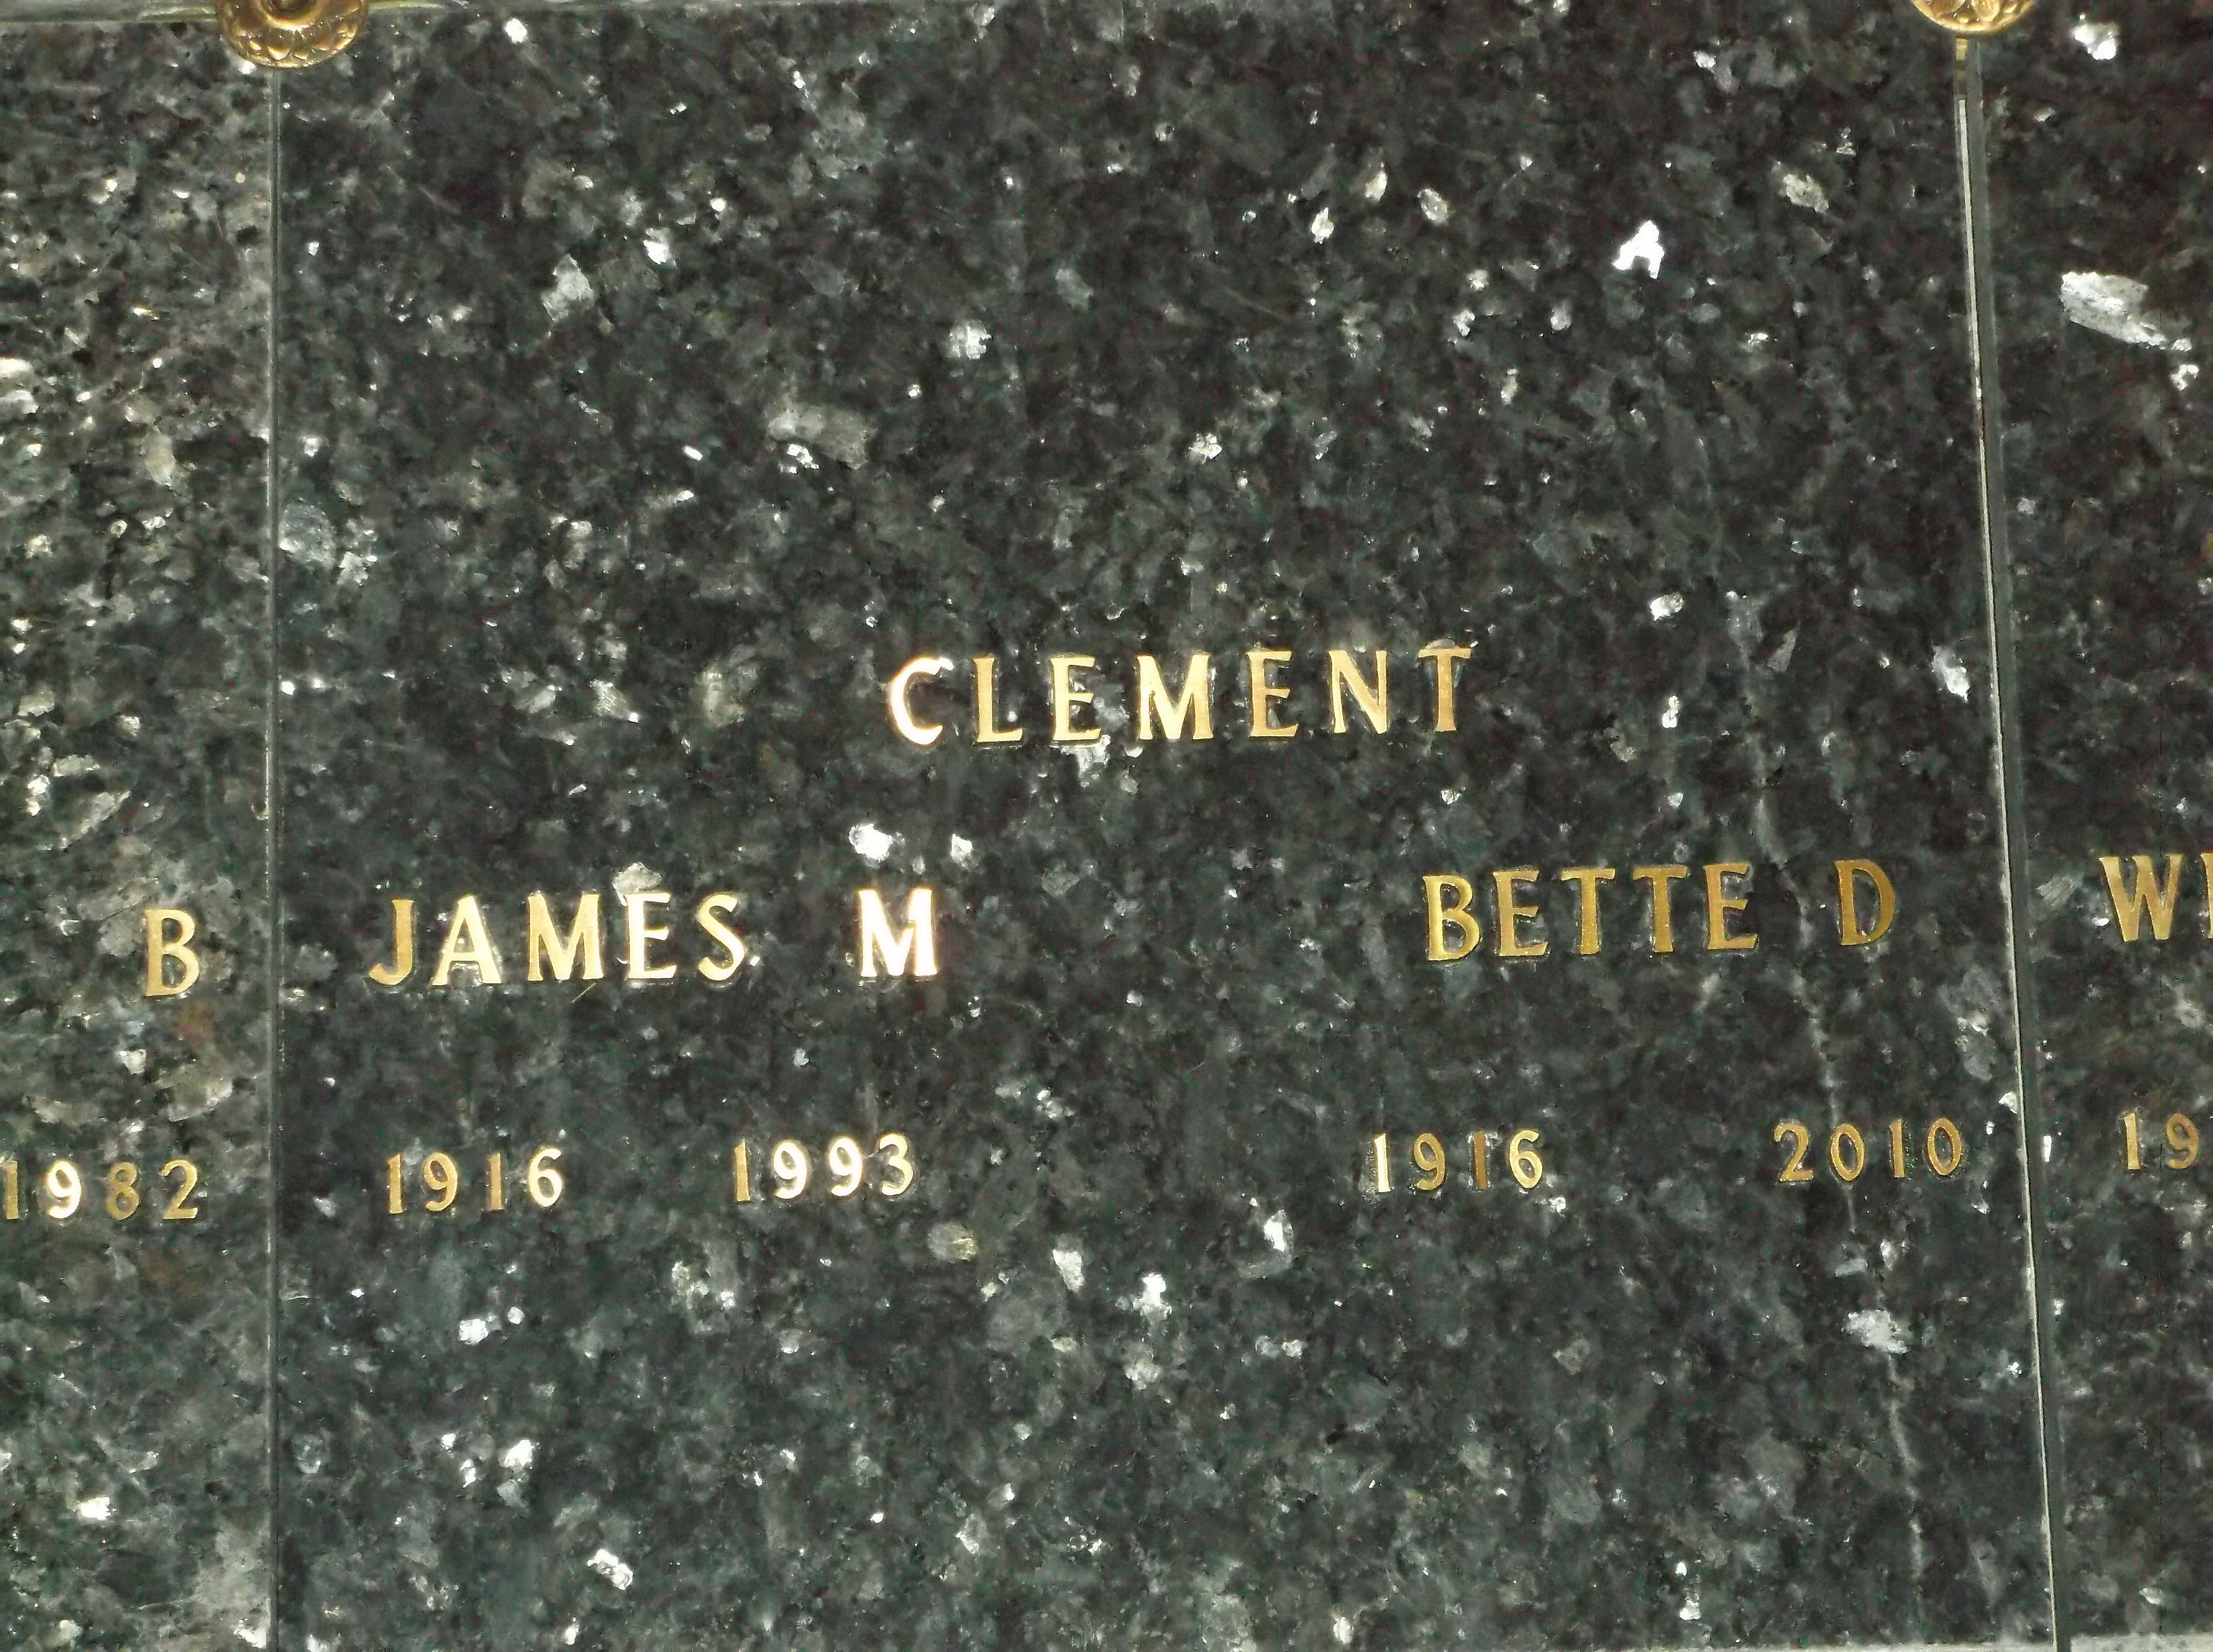 James M Clement